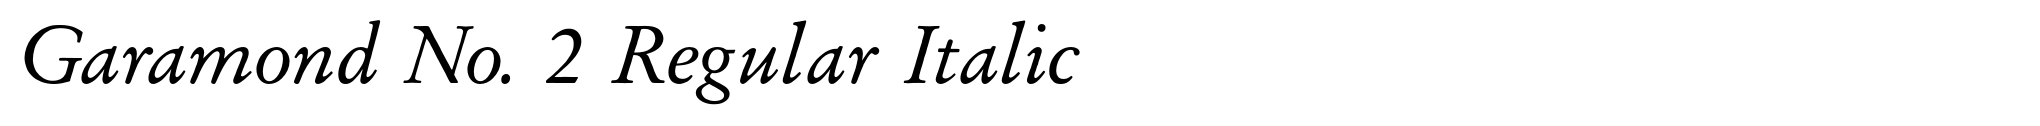 Garamond No. 2 Regular Italic image